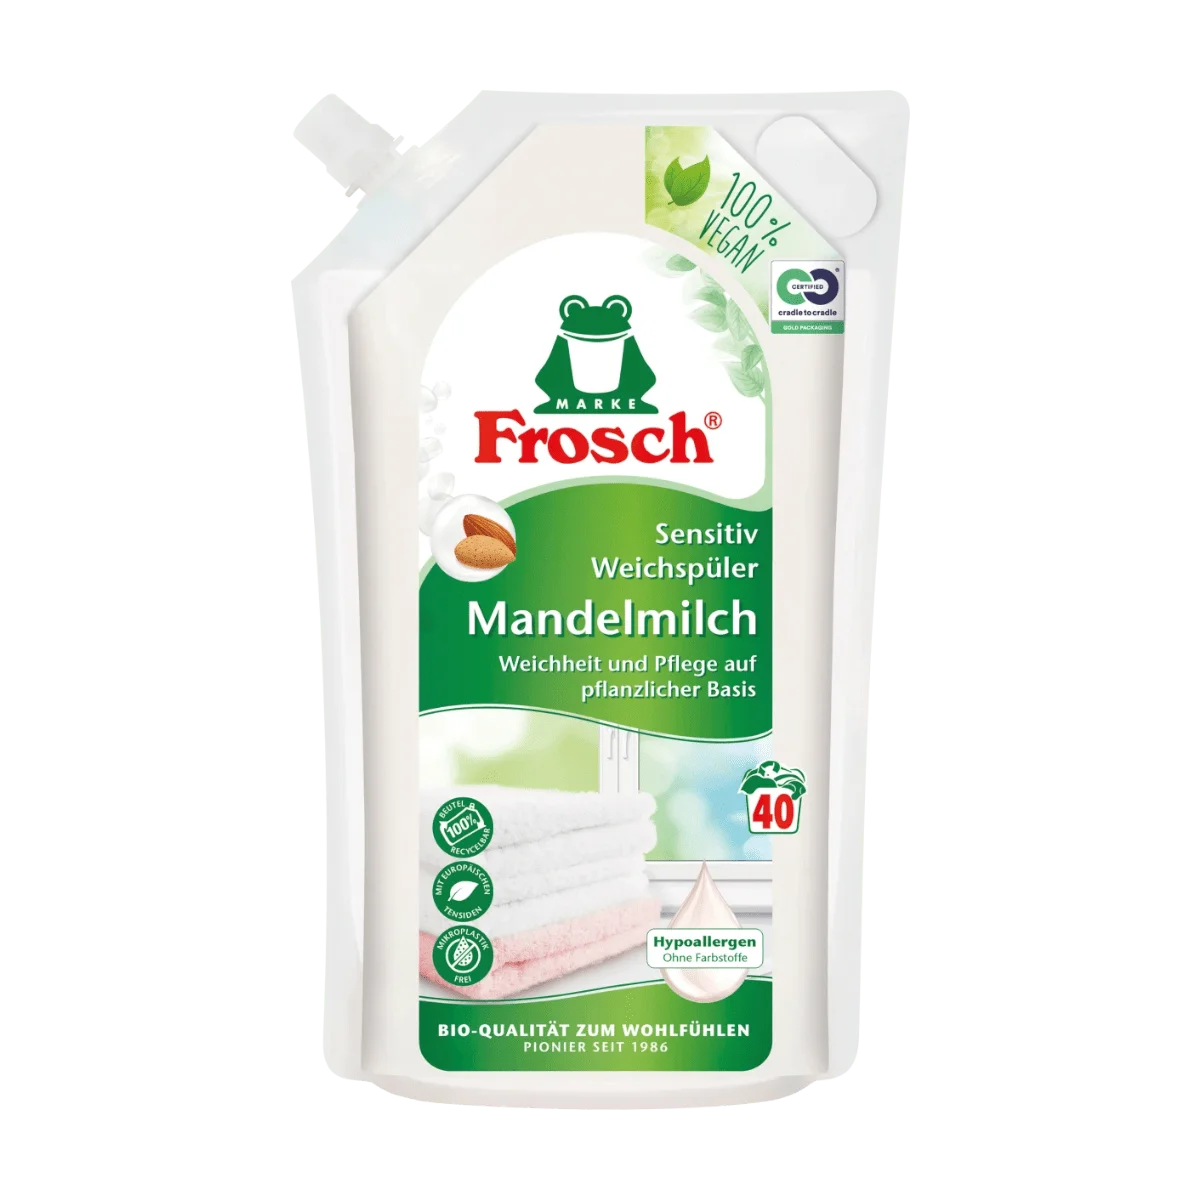 Frosch Weichspüler Mandelmilch 40 Wl, 1 l